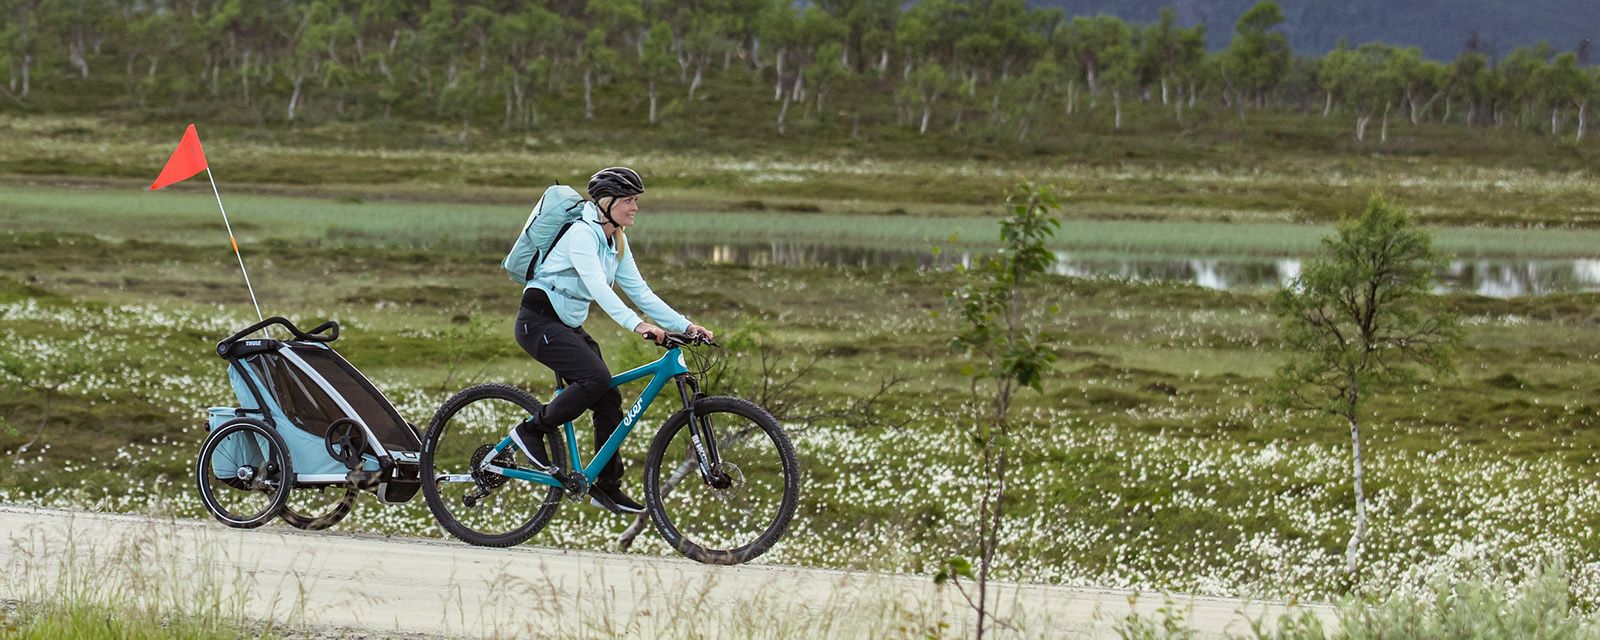 Женщина едет по полю на велосипеде с синим велоприцепом Thule Chariot Cross.